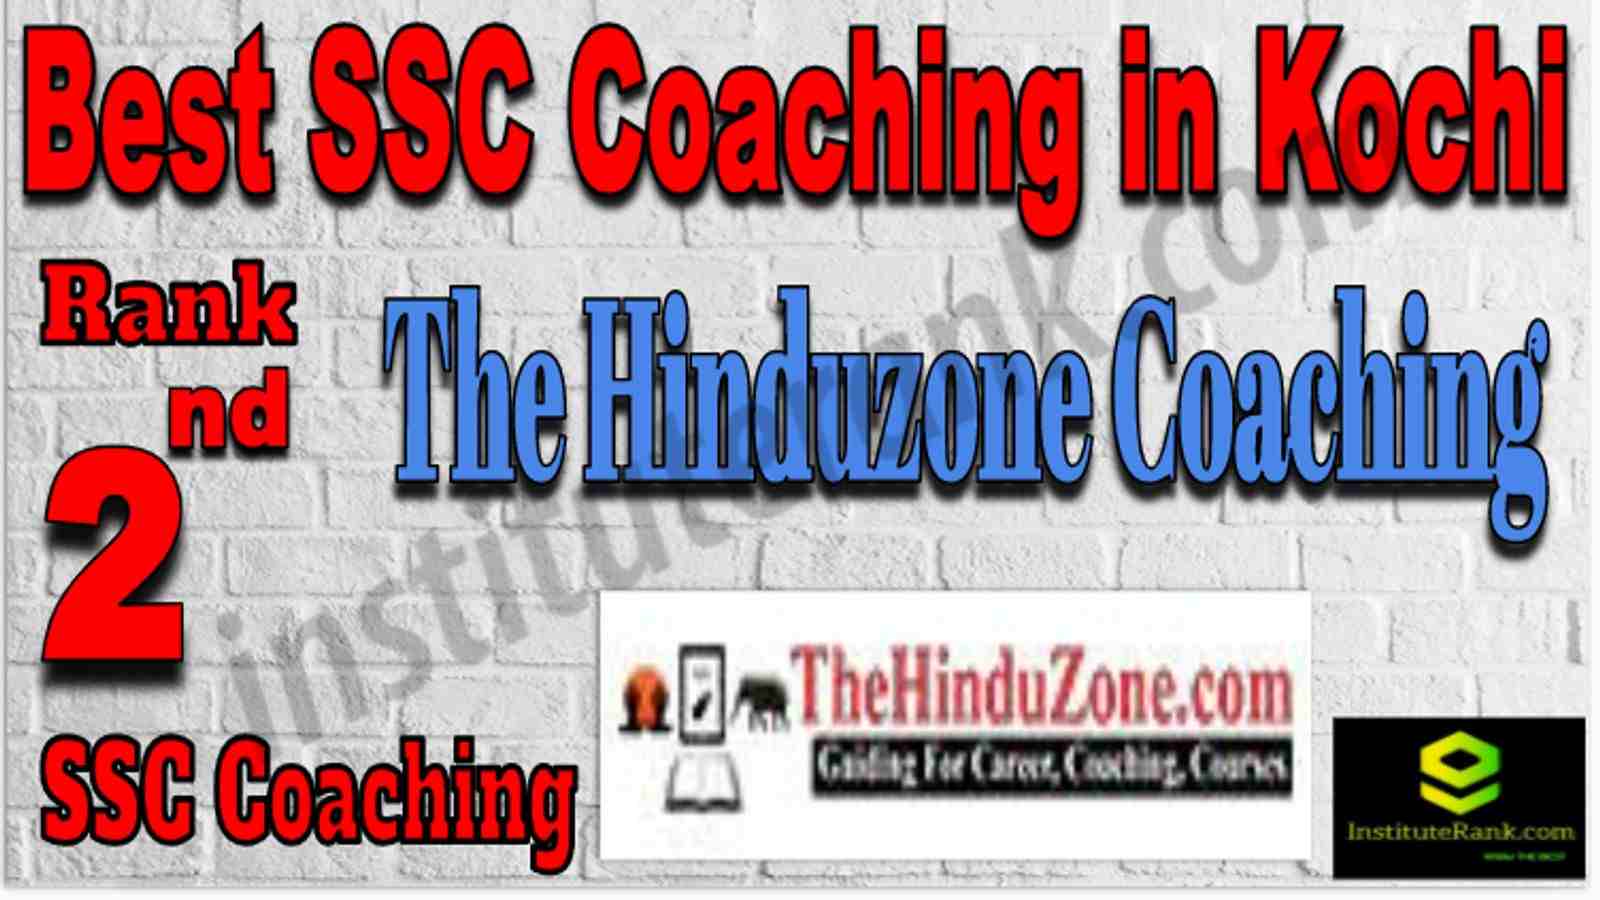 Rank 2 Best SSC Coaching in Kochi